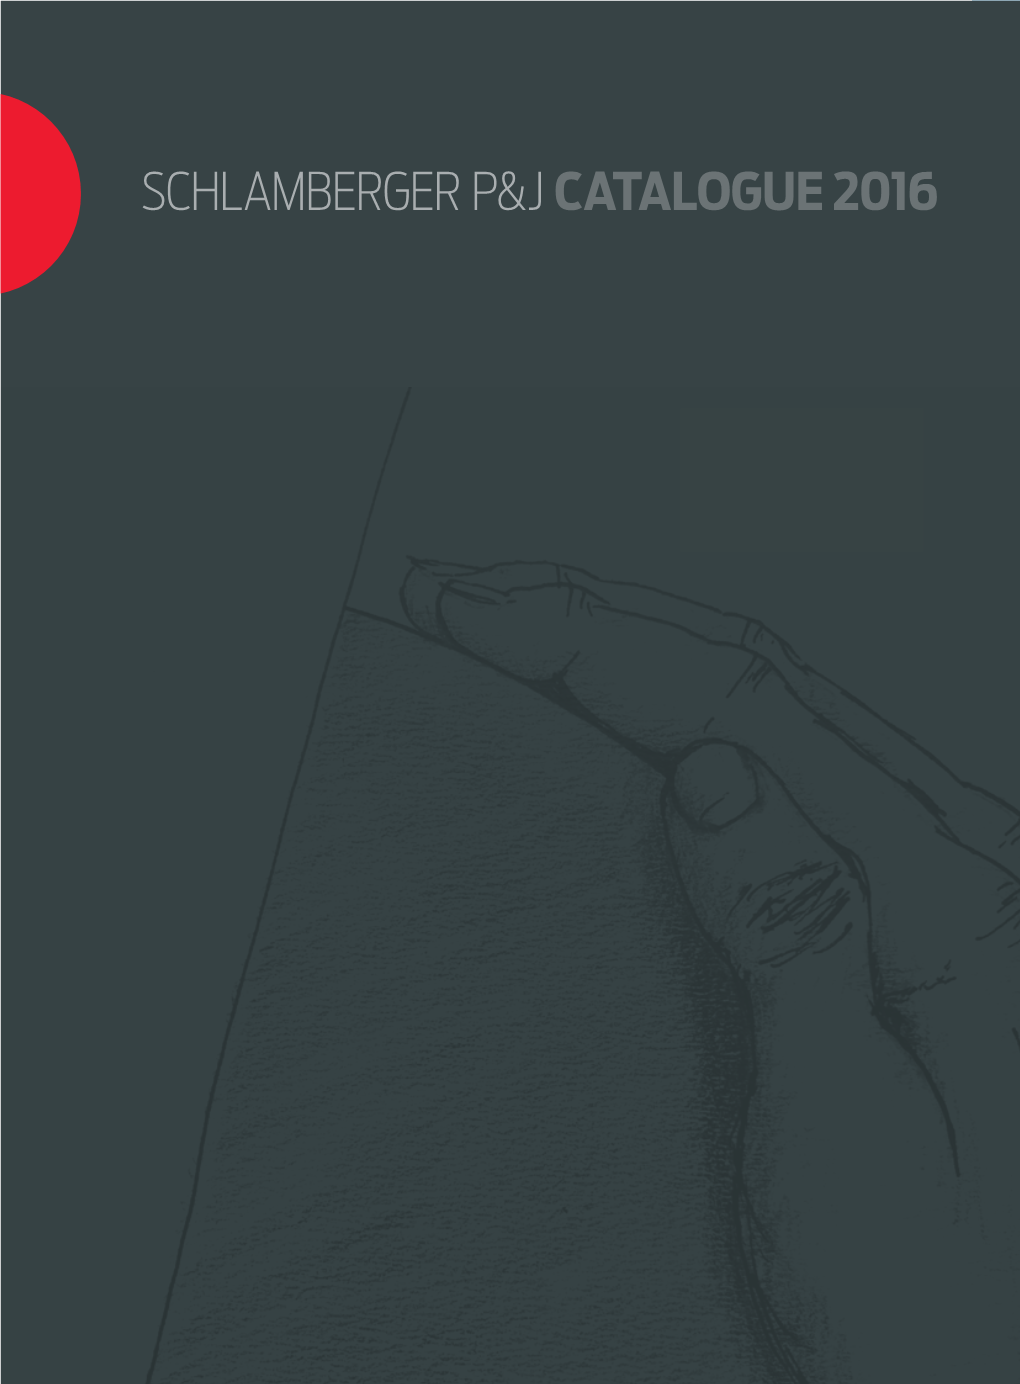 Schlamberger P&J Catalogue 2016